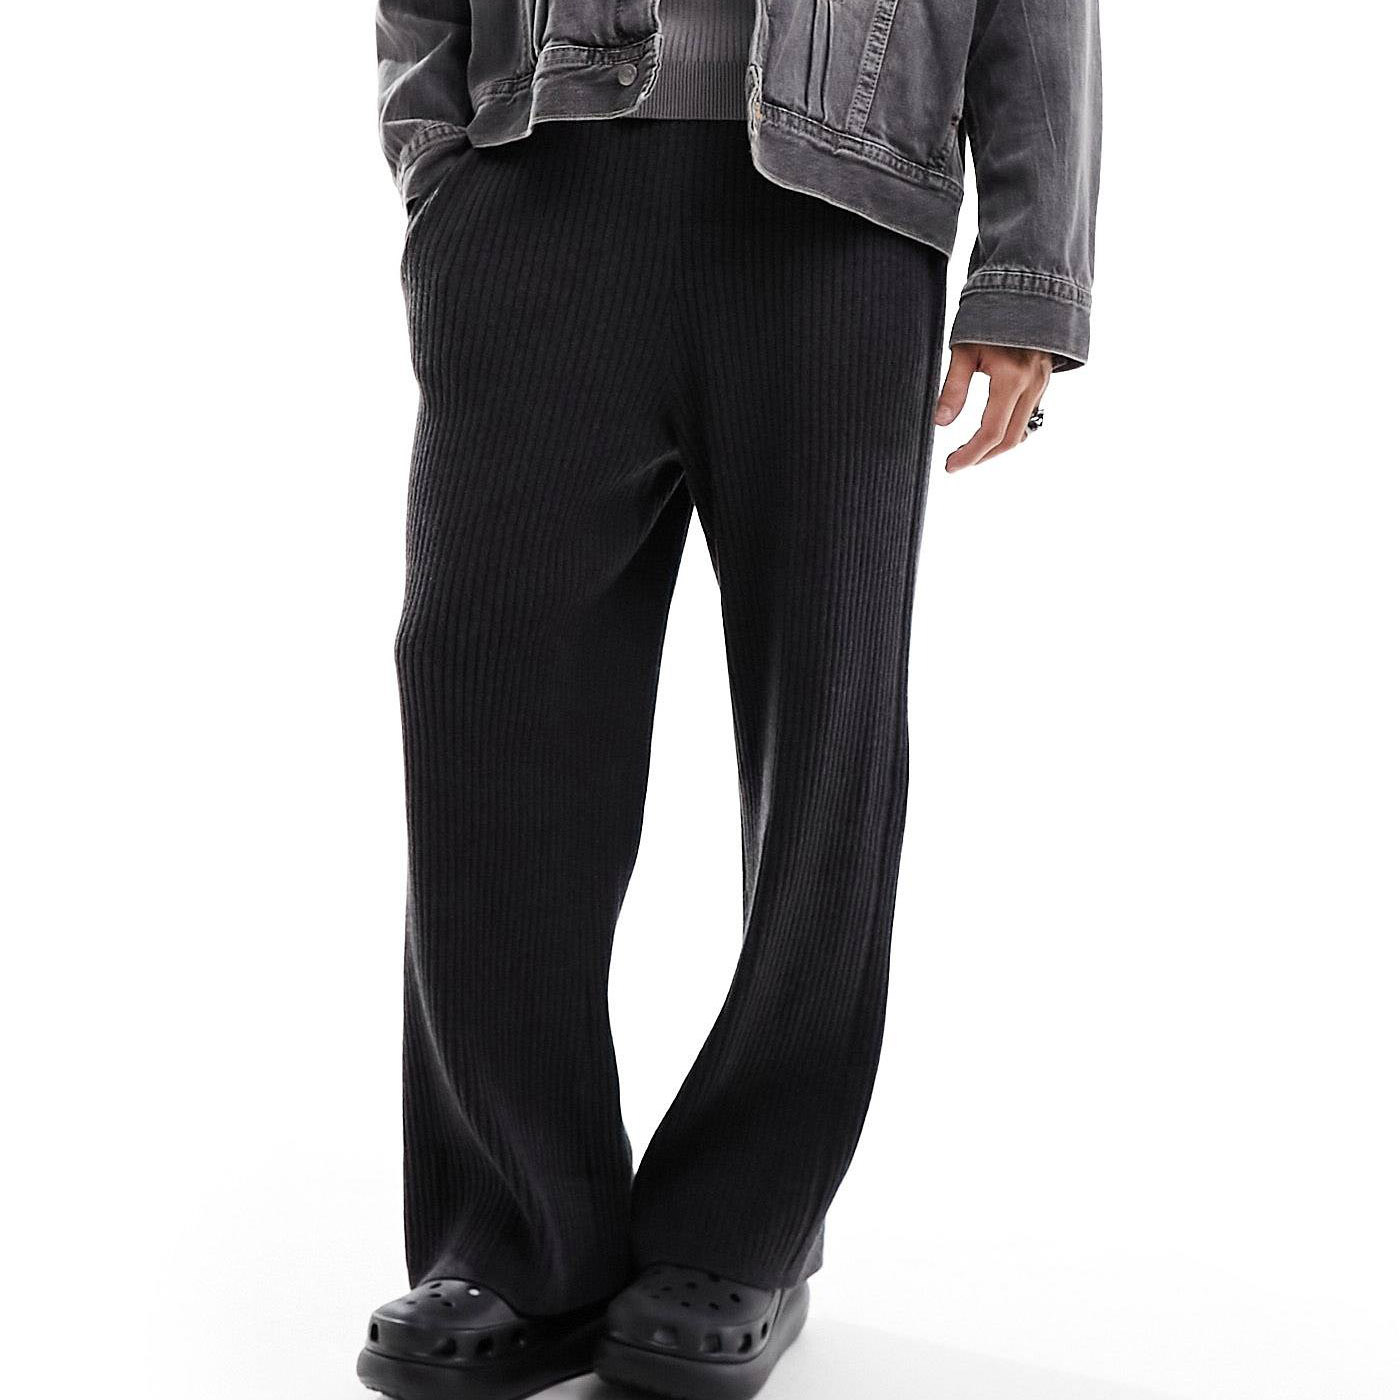 Брюки Weekday Darwin Loose Fit Knitted, темно-серый брюки спортивные greyhound утепленные мужские темно серые